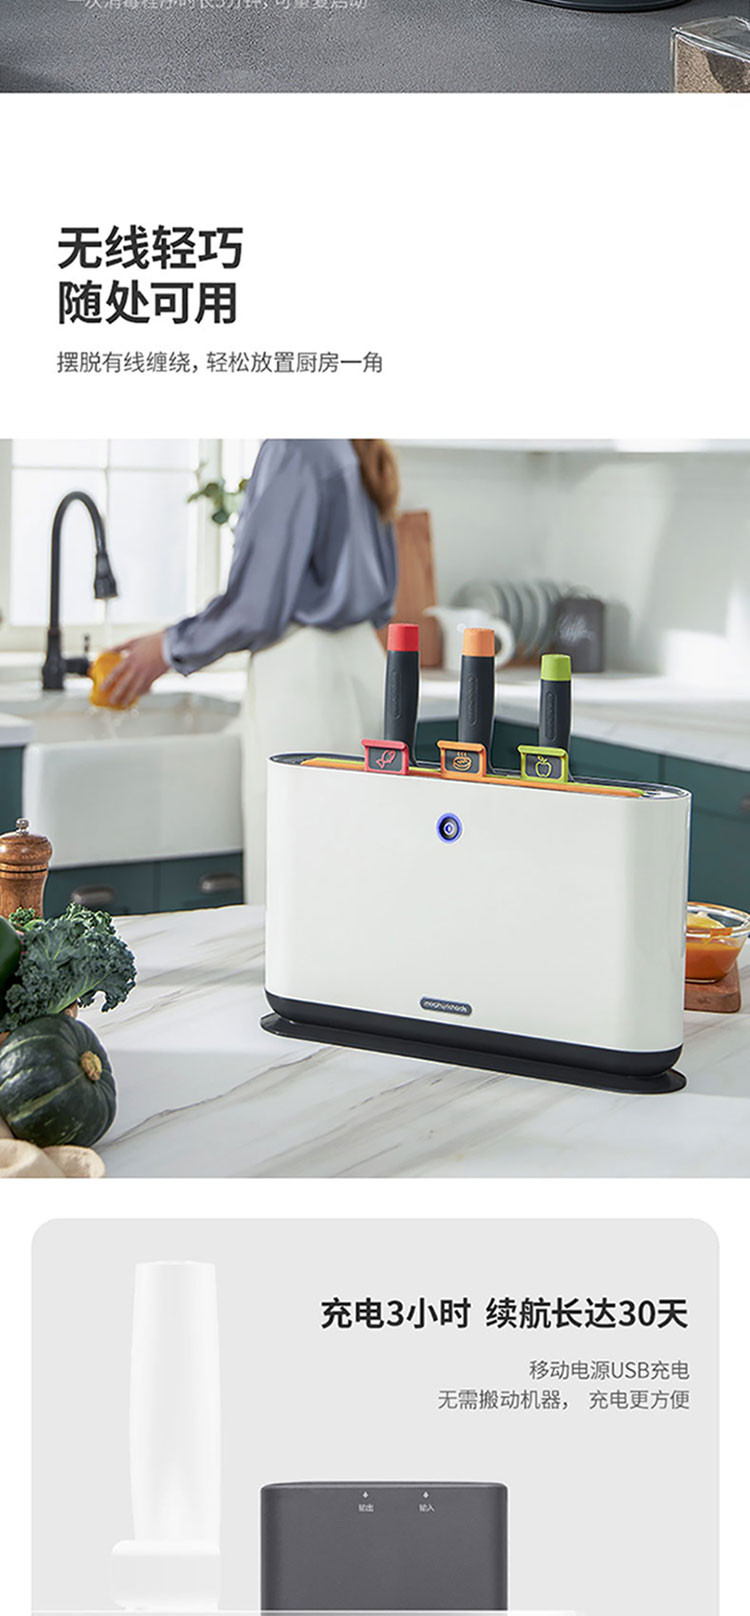 摩飞电器 智能除菌刀具架砧板菜板厨房用品全自动紫外线杀菌机MR1000